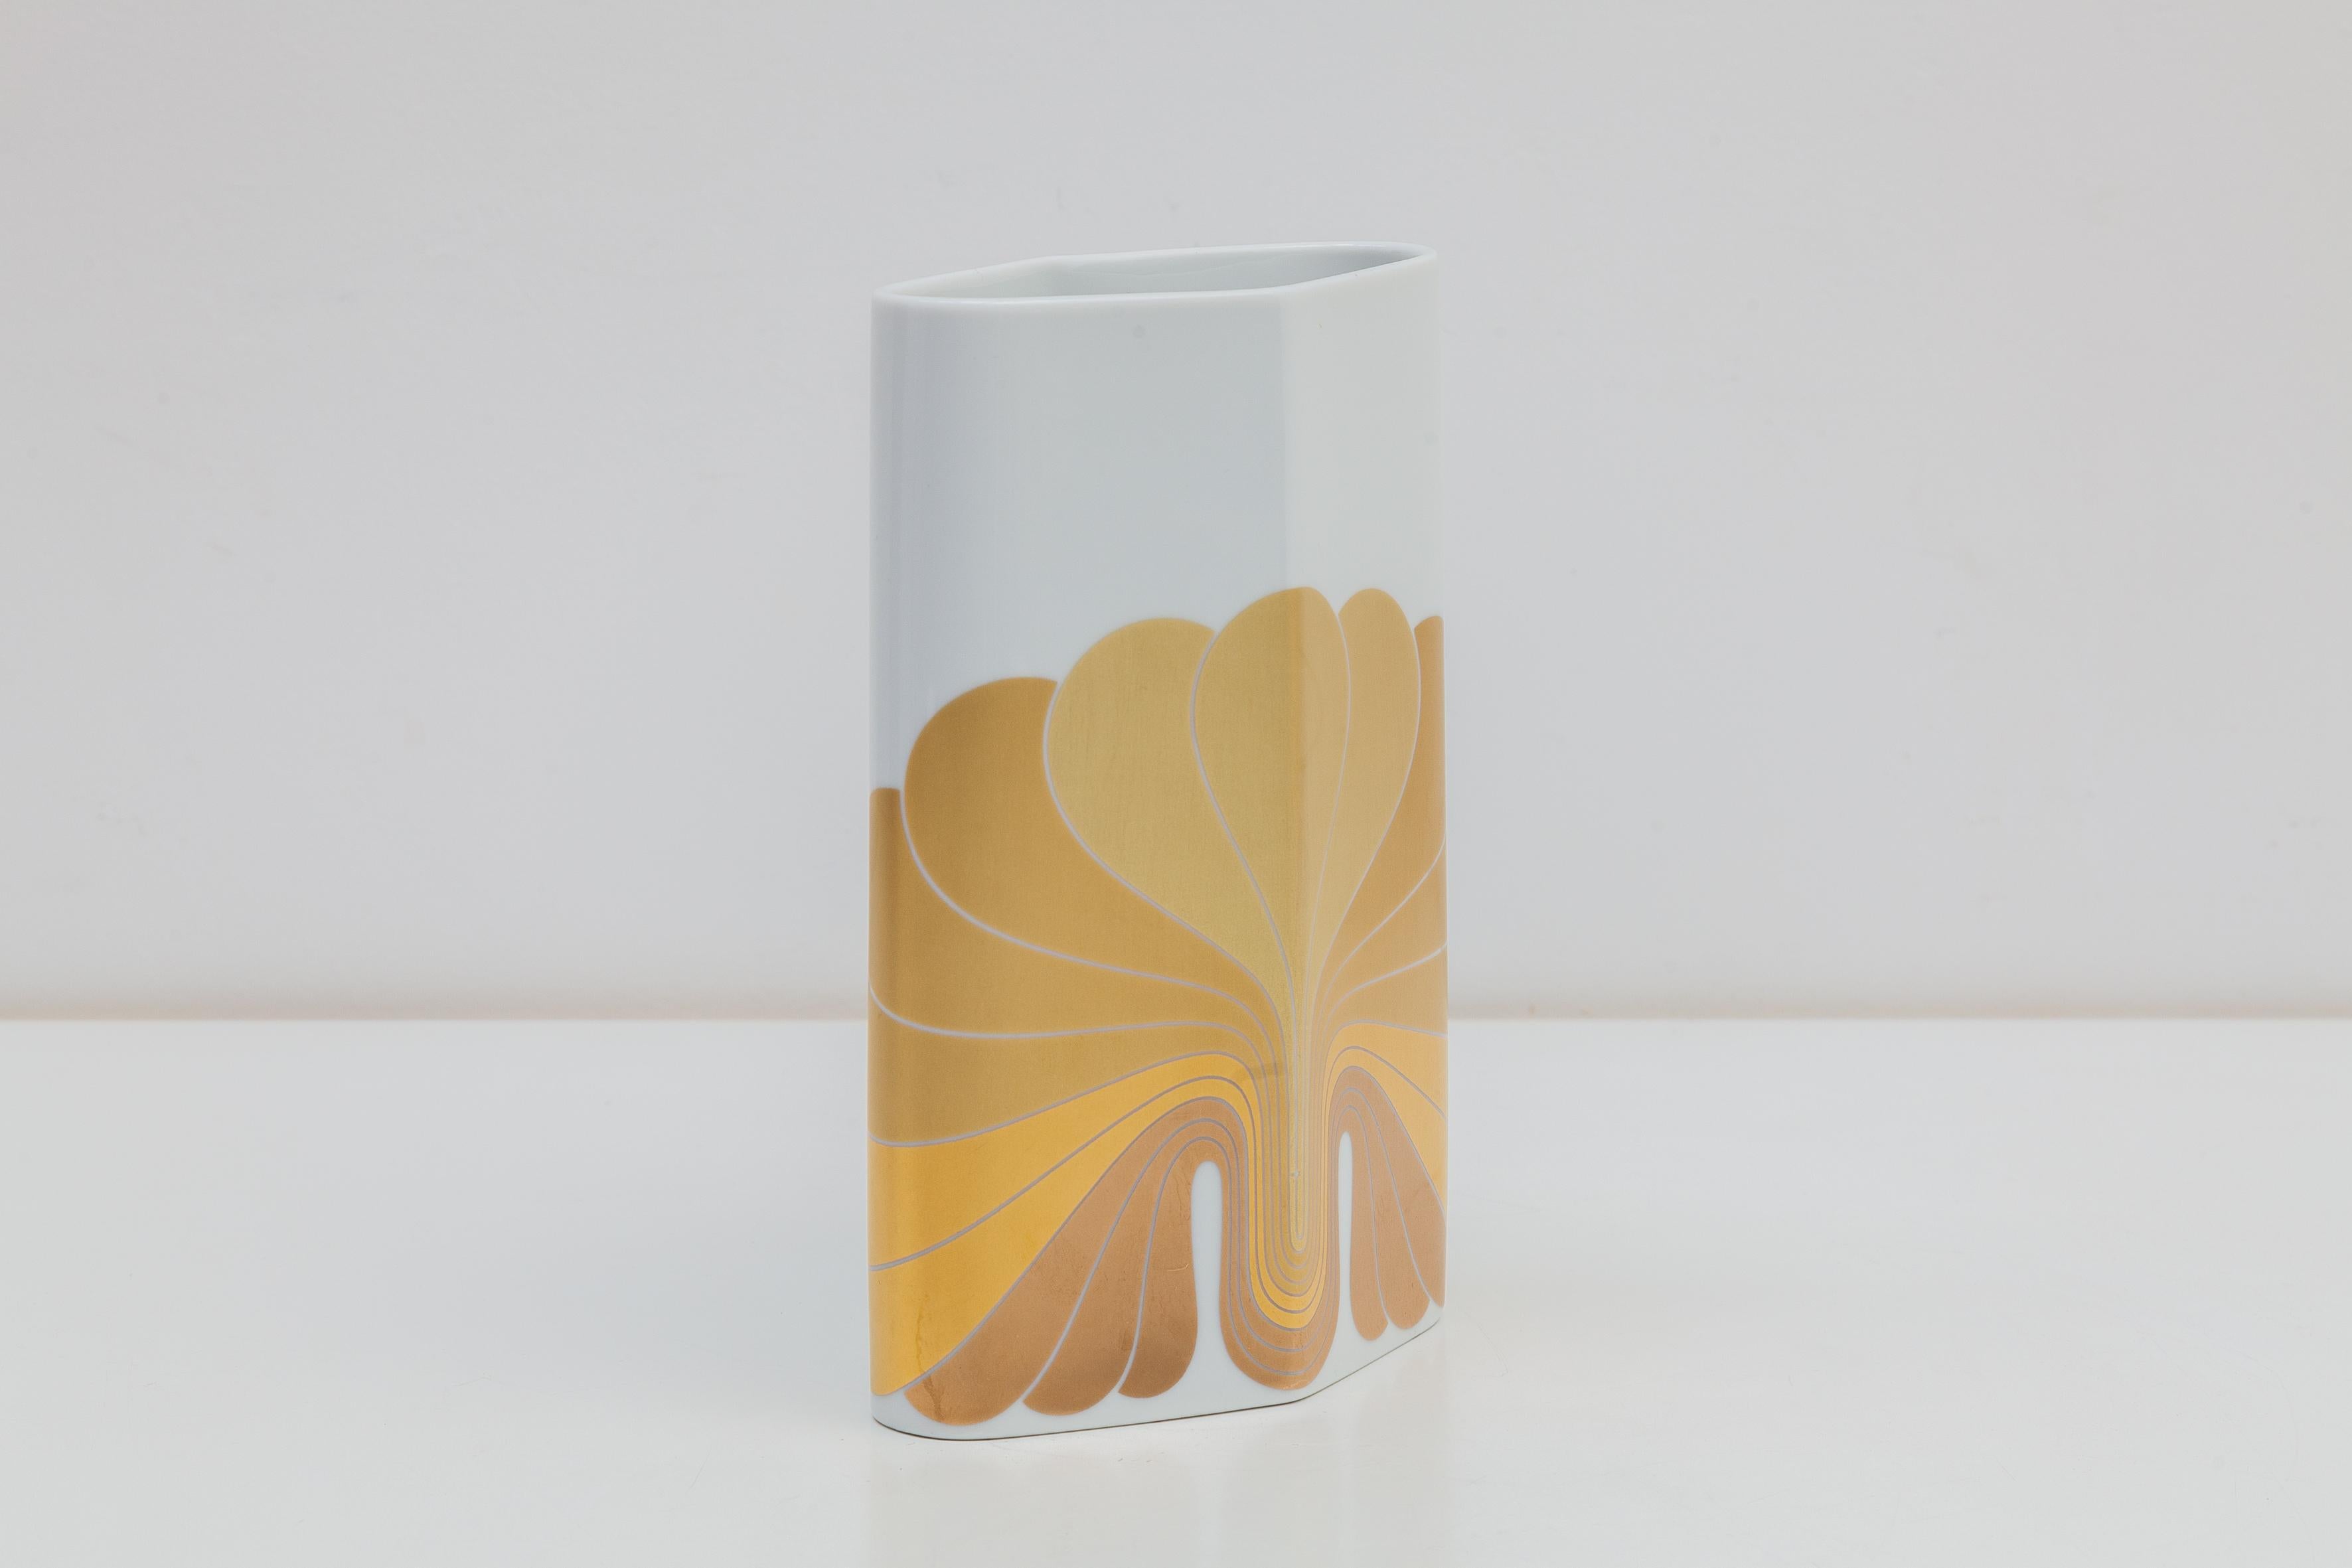 Vintage vase by Rosenthal, Germany. “Studio Line”, 1960s-1970s mod printed design in shades of 24-karat gold decoration on white porcelain. Marked.